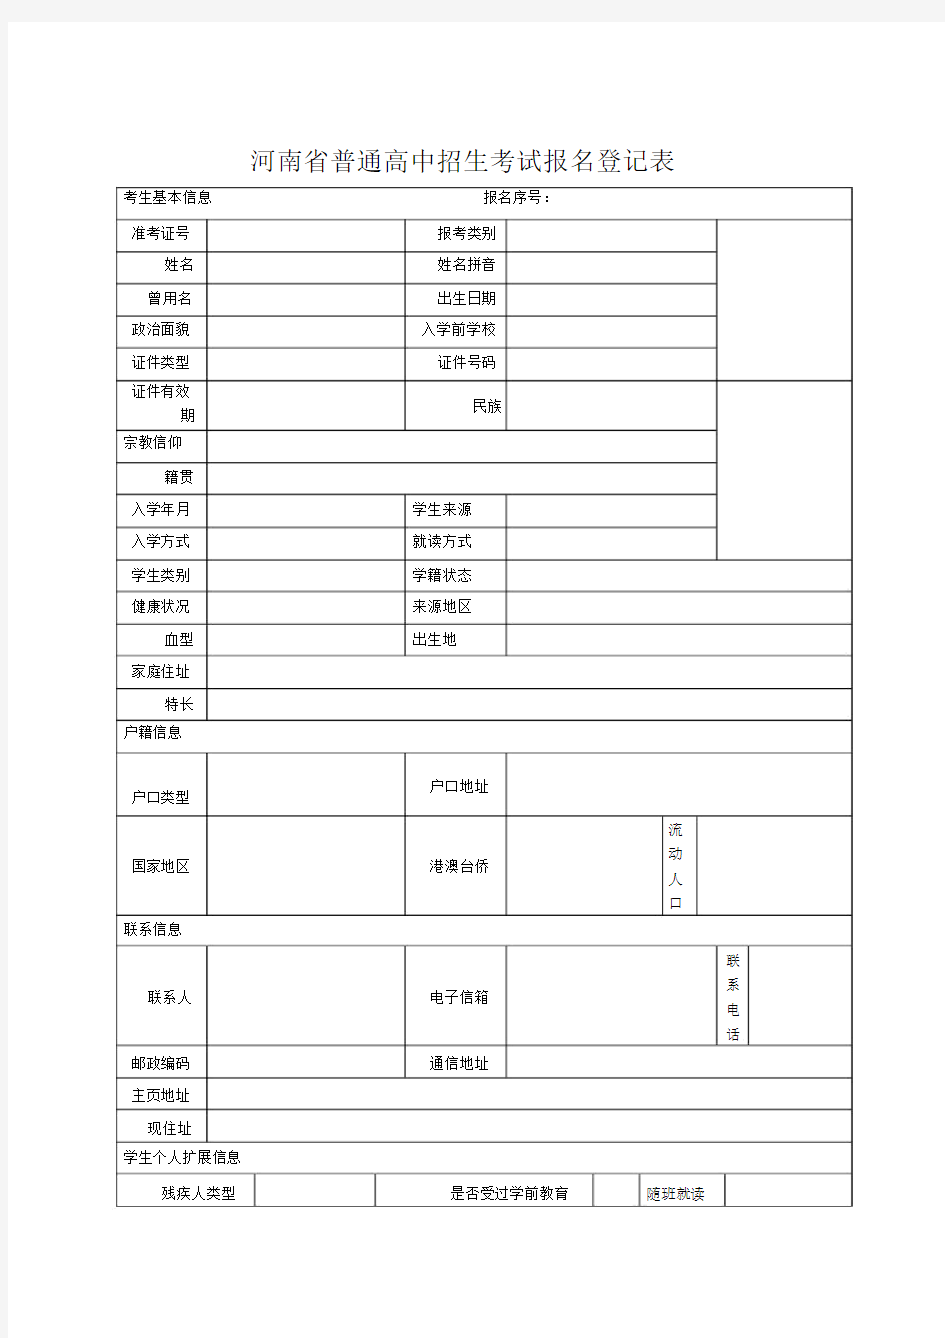 河南省普通高中招生考试报名登记表